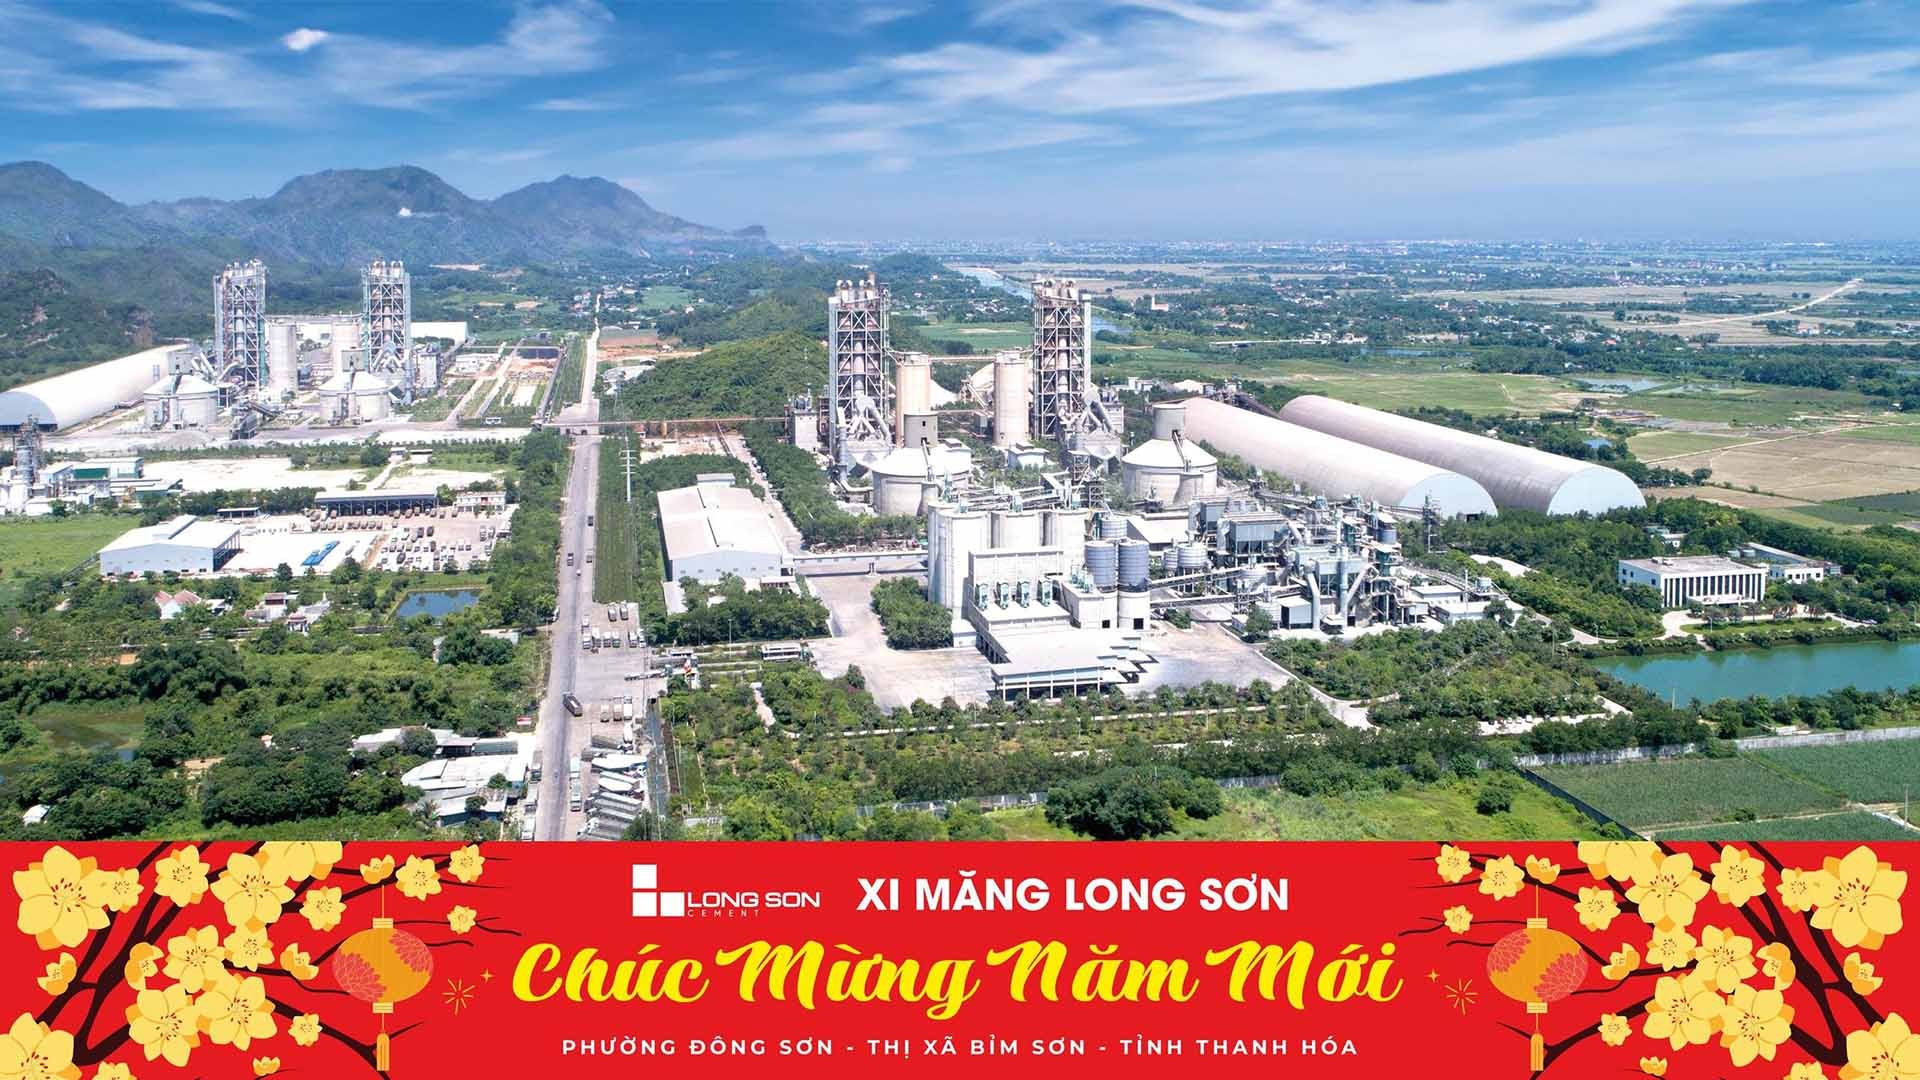 Nhà máy Xi măng Long Sơn.